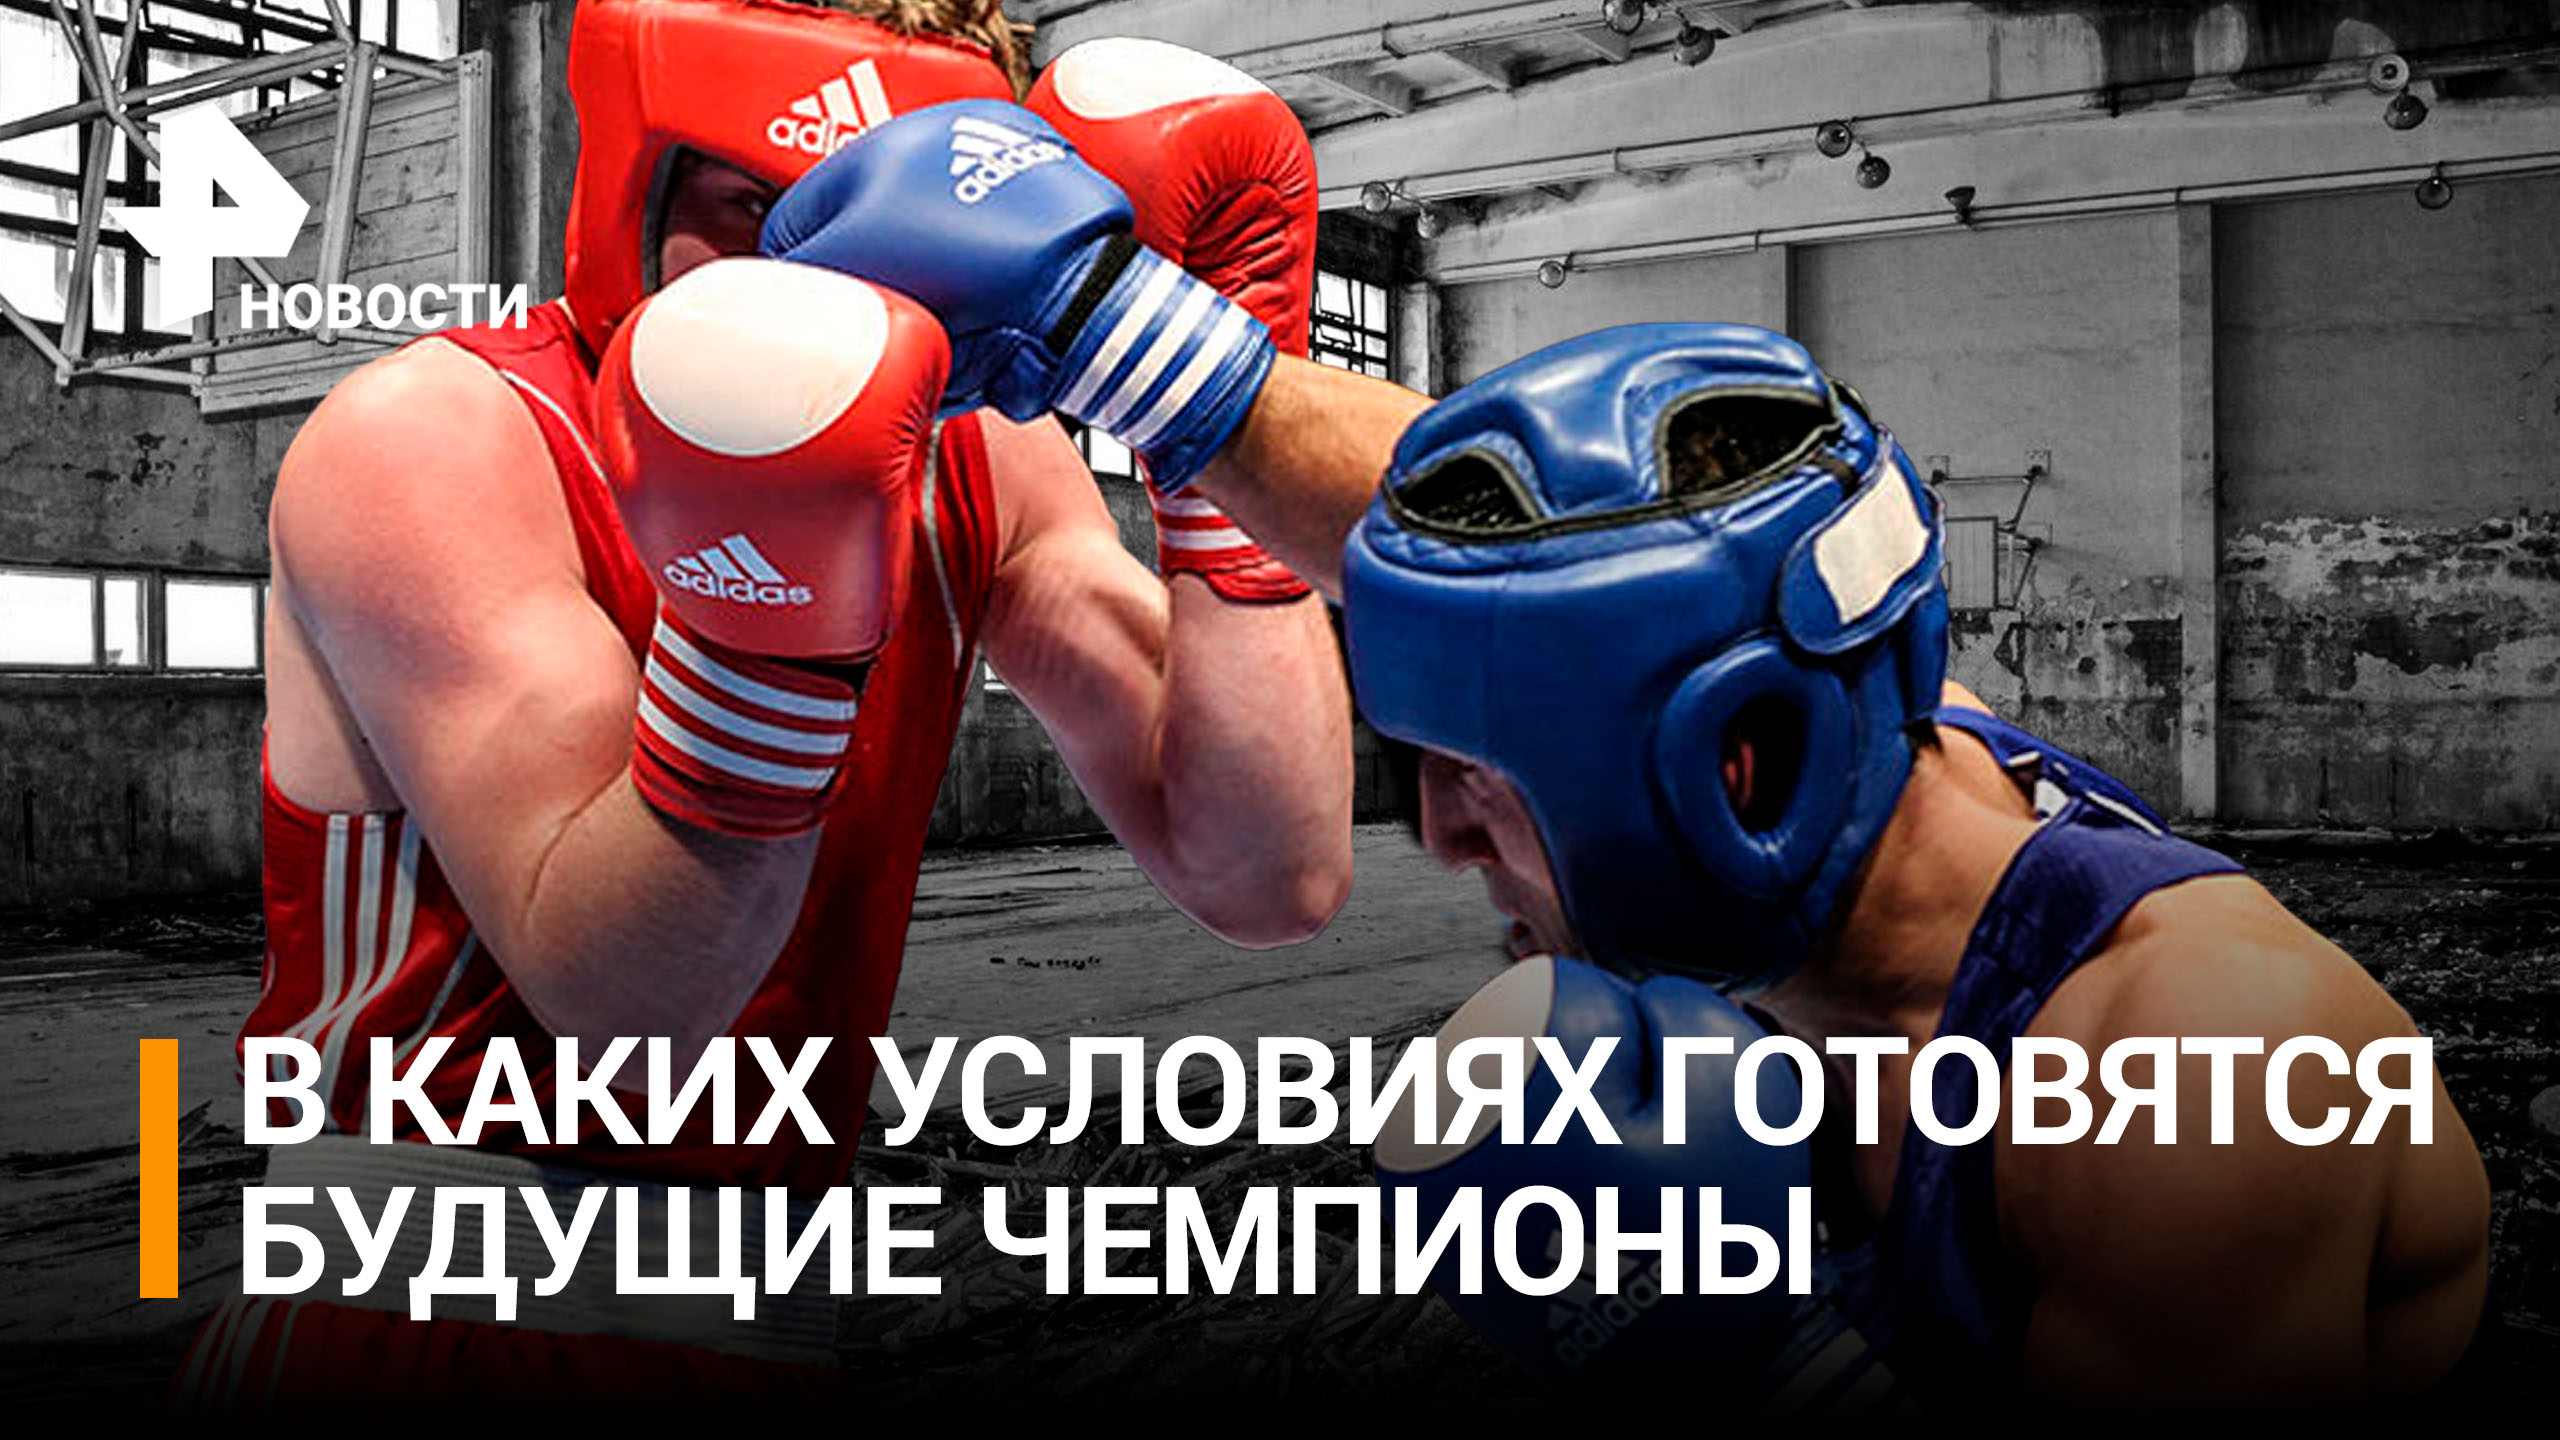 Боксеры из Донбасса готовятся к предстоящему чемпионату мира / РЕН Новости